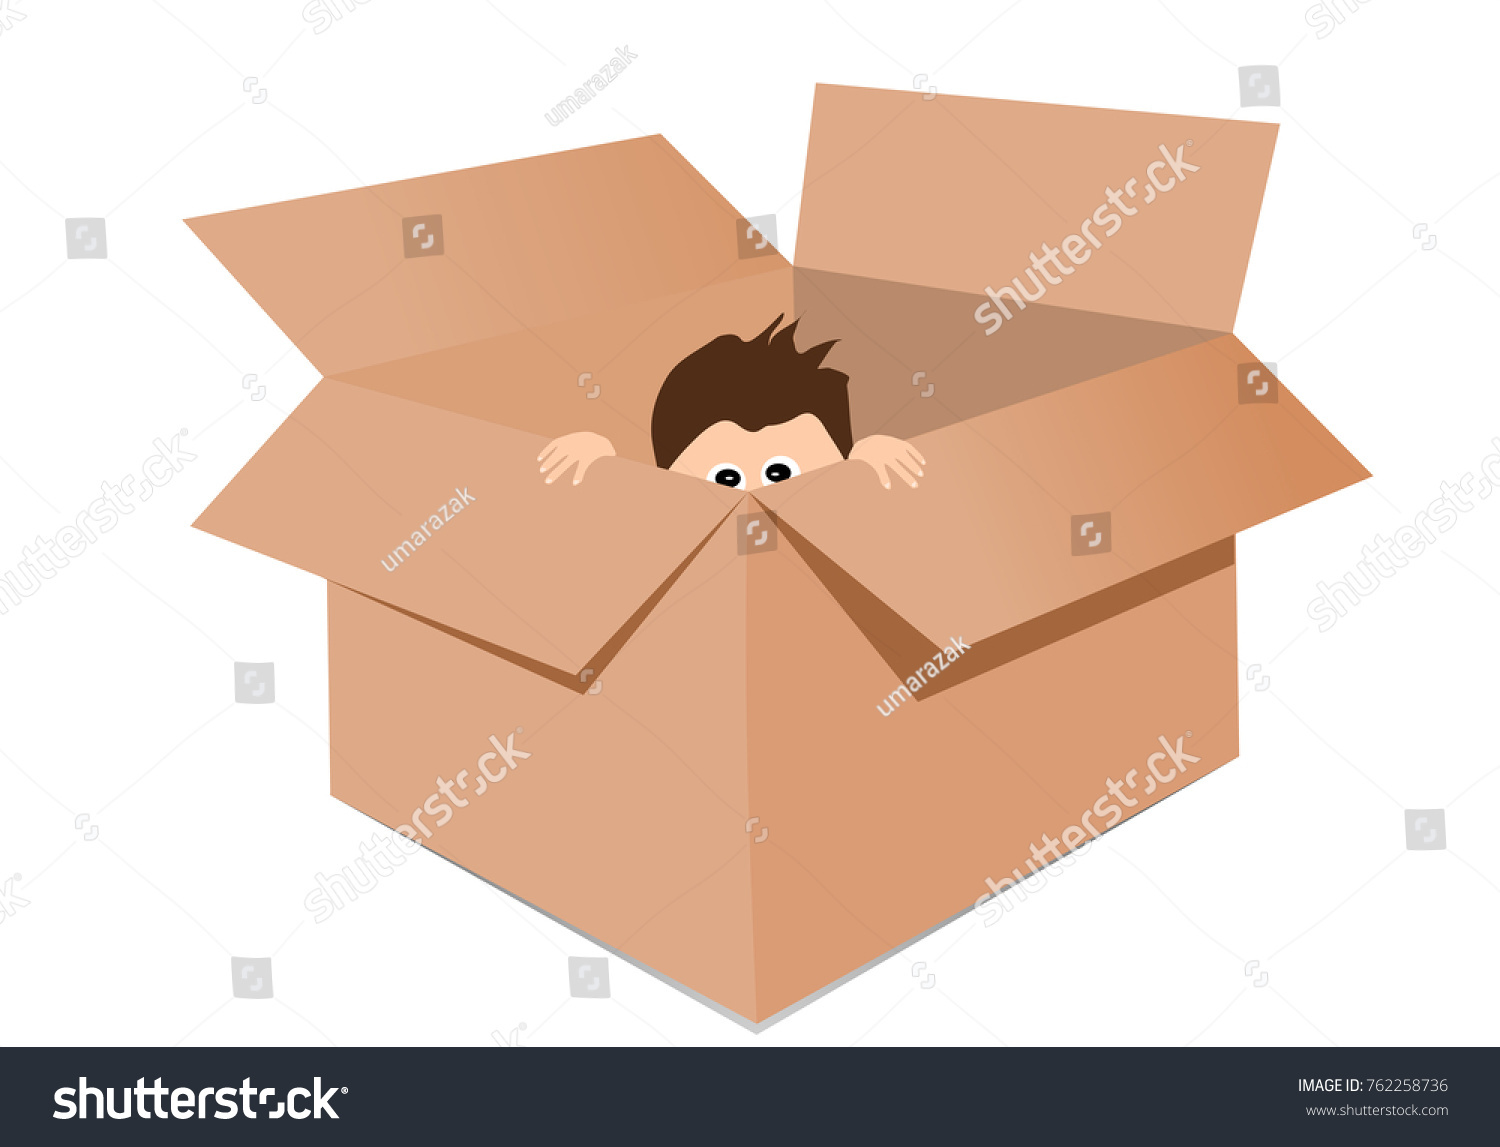 Включи прятаться в коробках